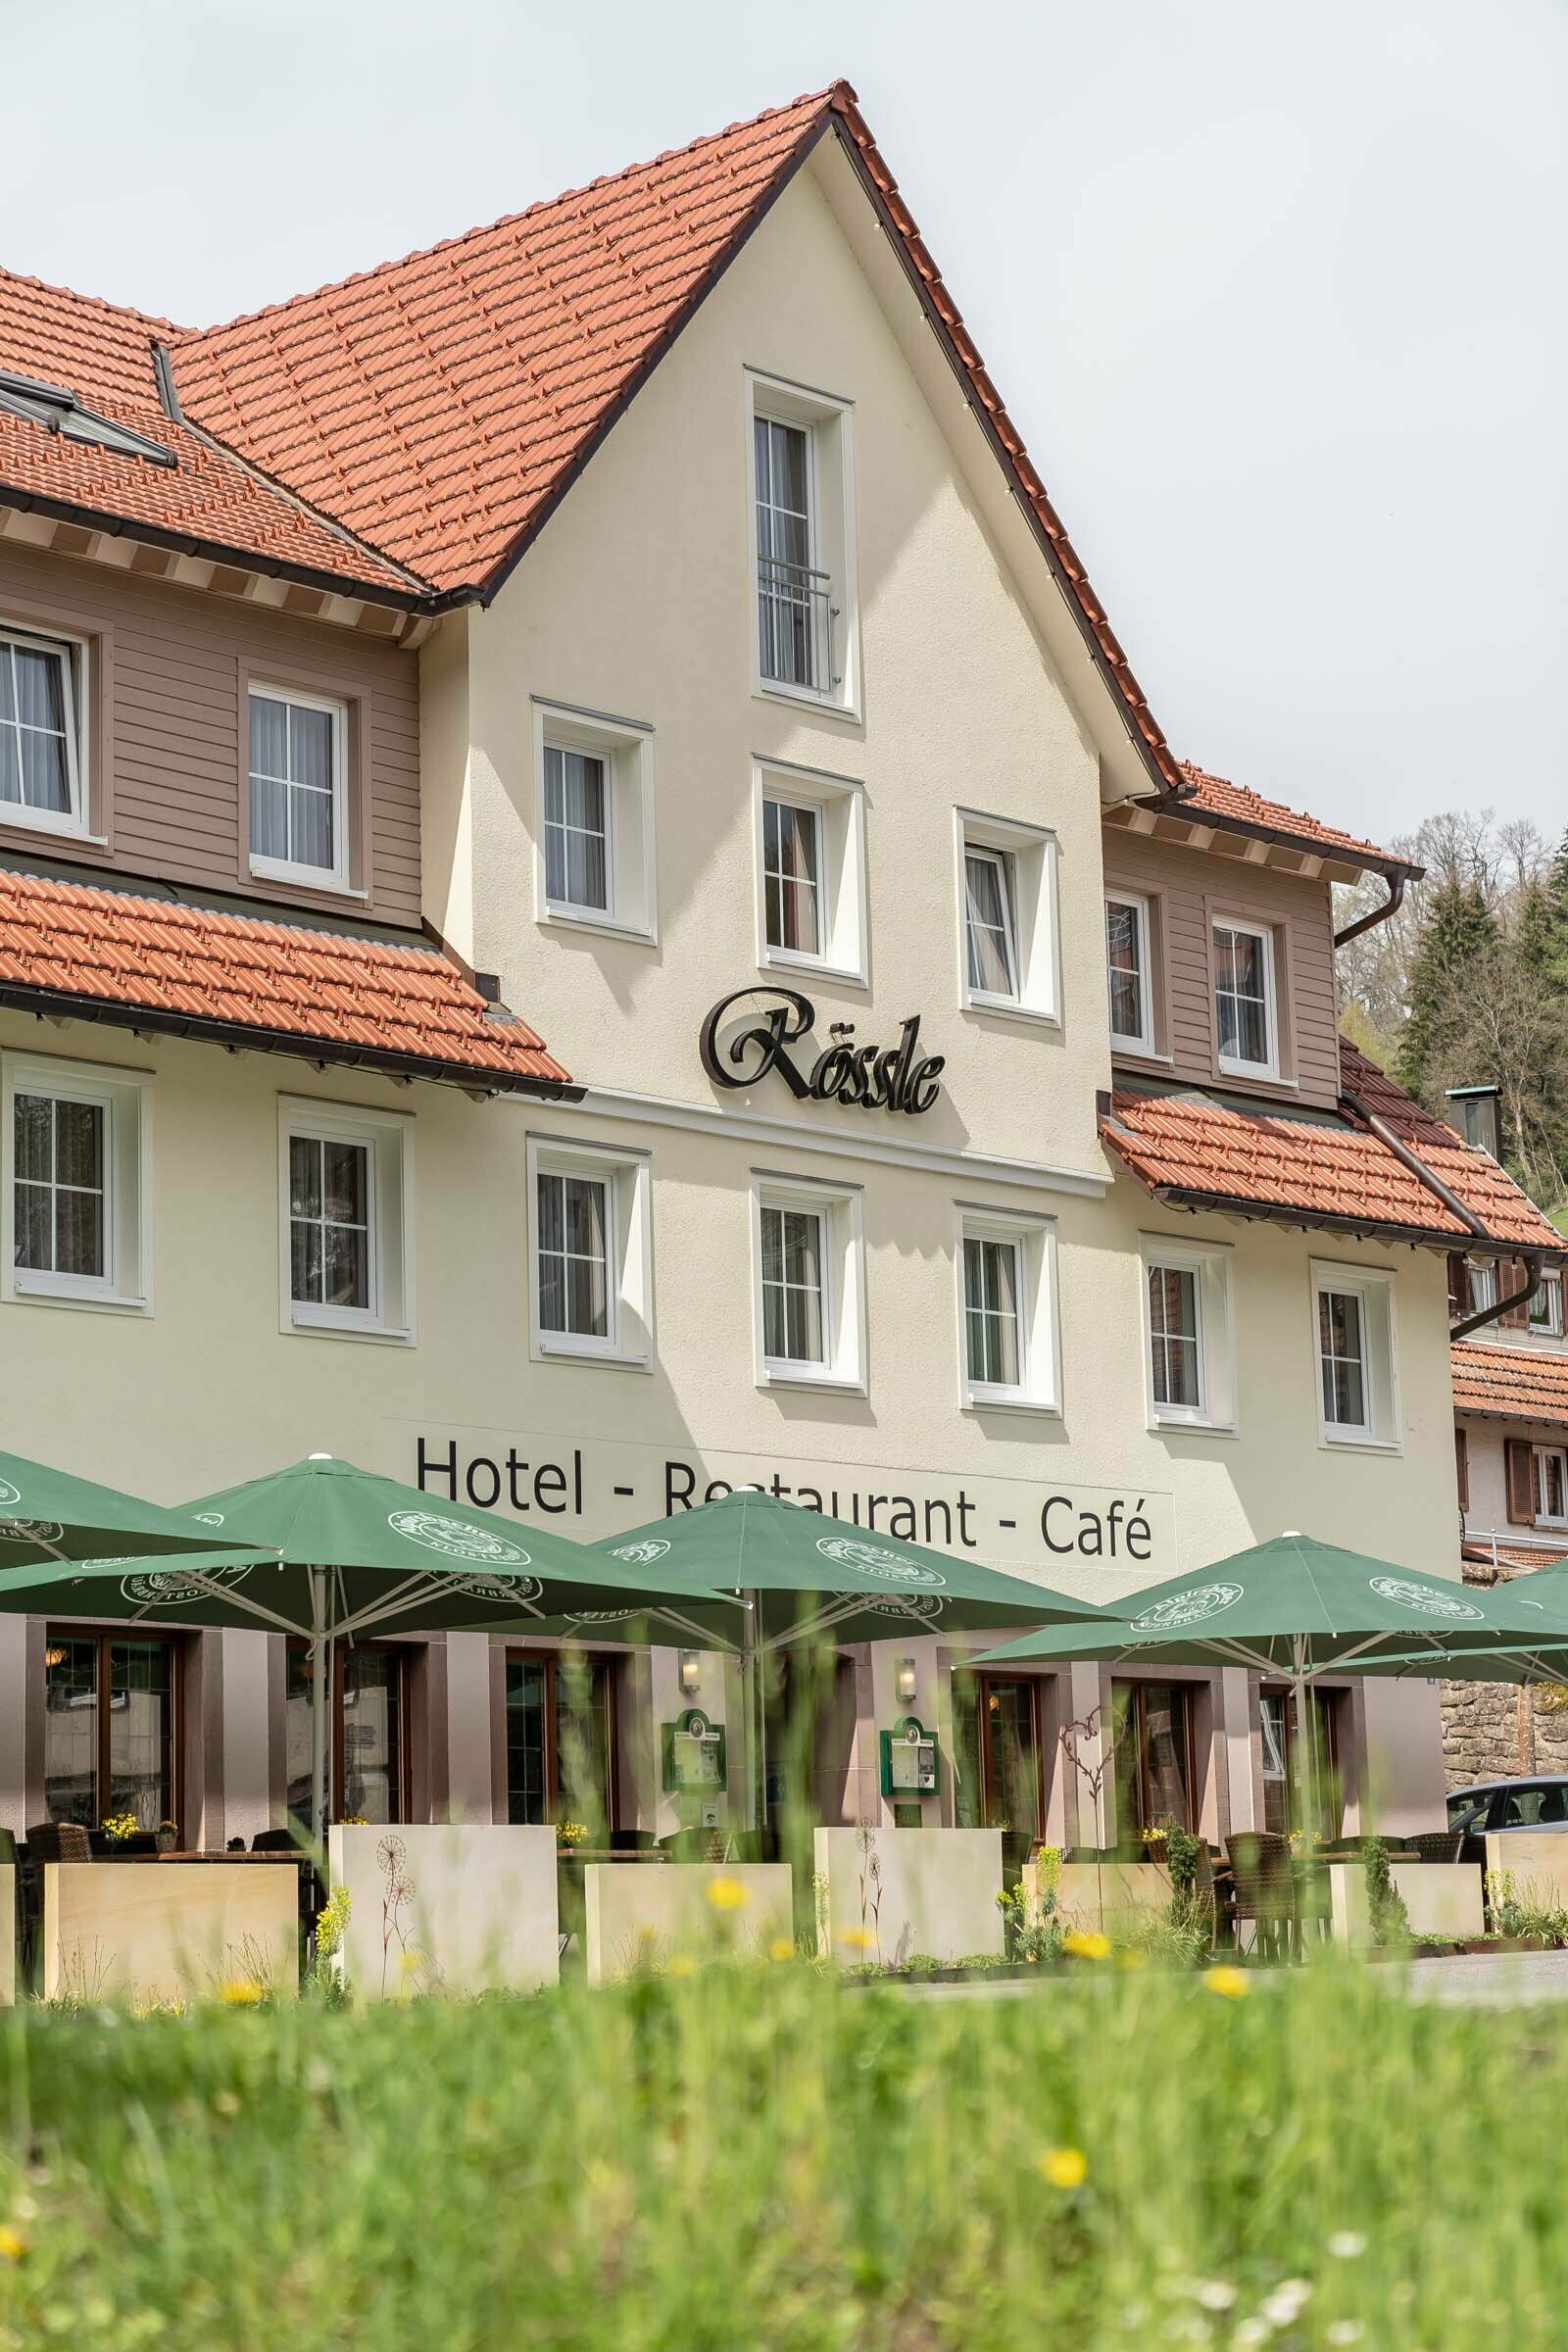 2 Tage Auszeit im Schwarzwald inkl. Aqua-Thermo-Jet Massage – Hotel Rössle Berneck  in Altensteig, Baden-Württemberg inkl. Halbpension